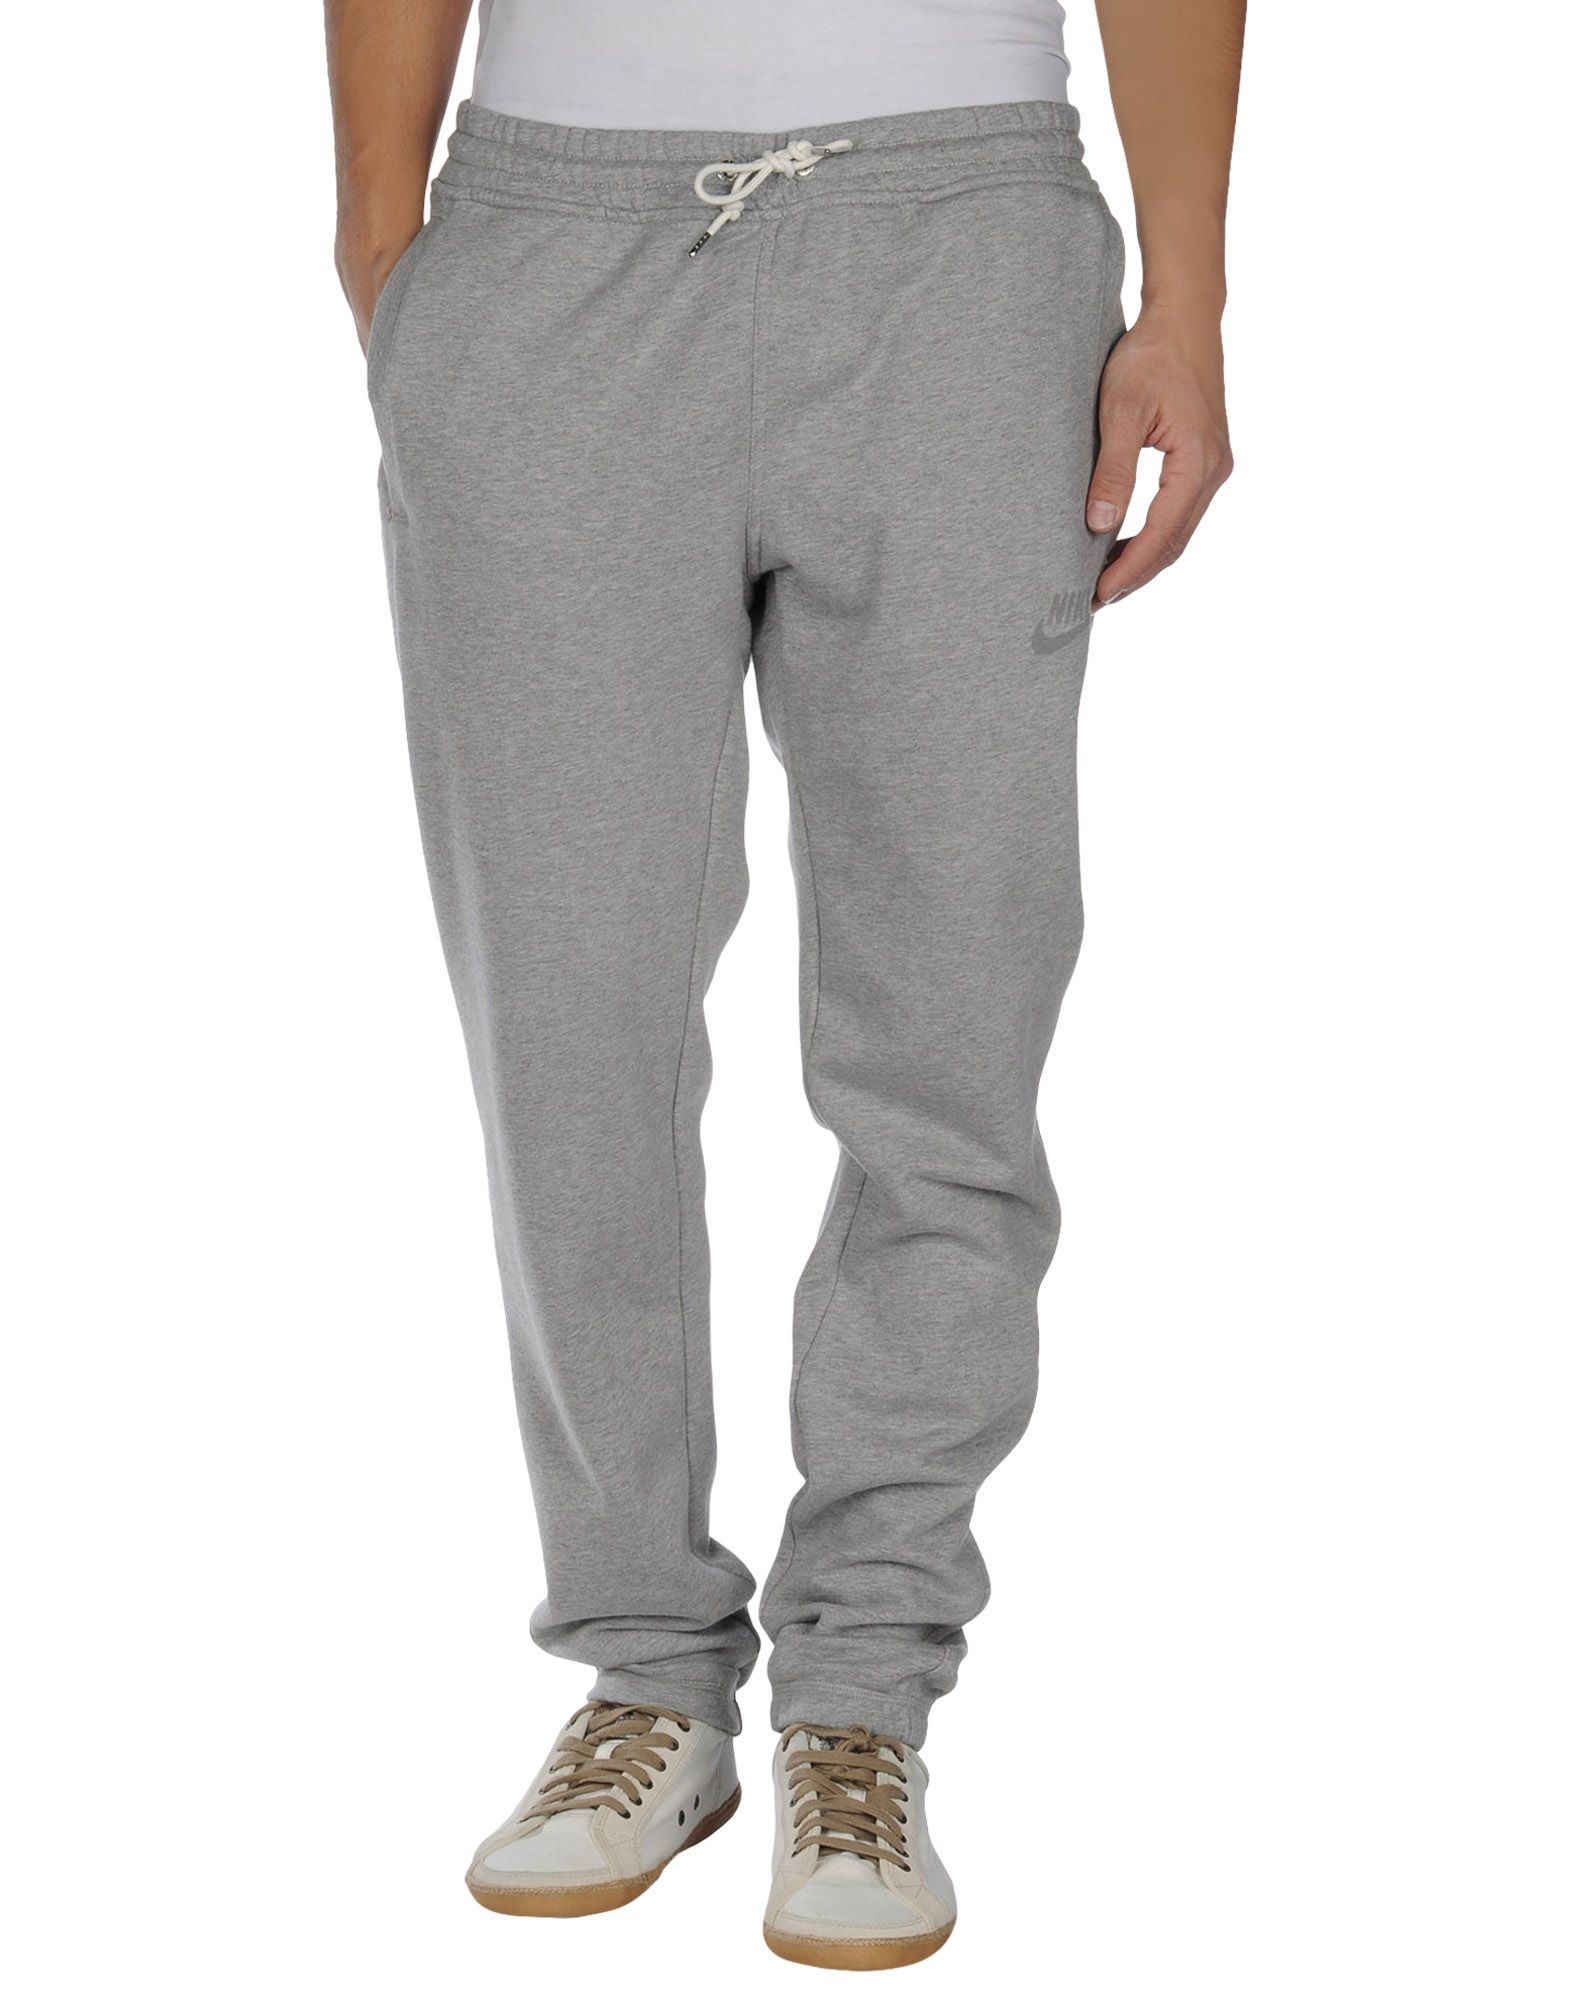 Nike Sweat Pants in Light Grey (Gray) for Men - Lyst